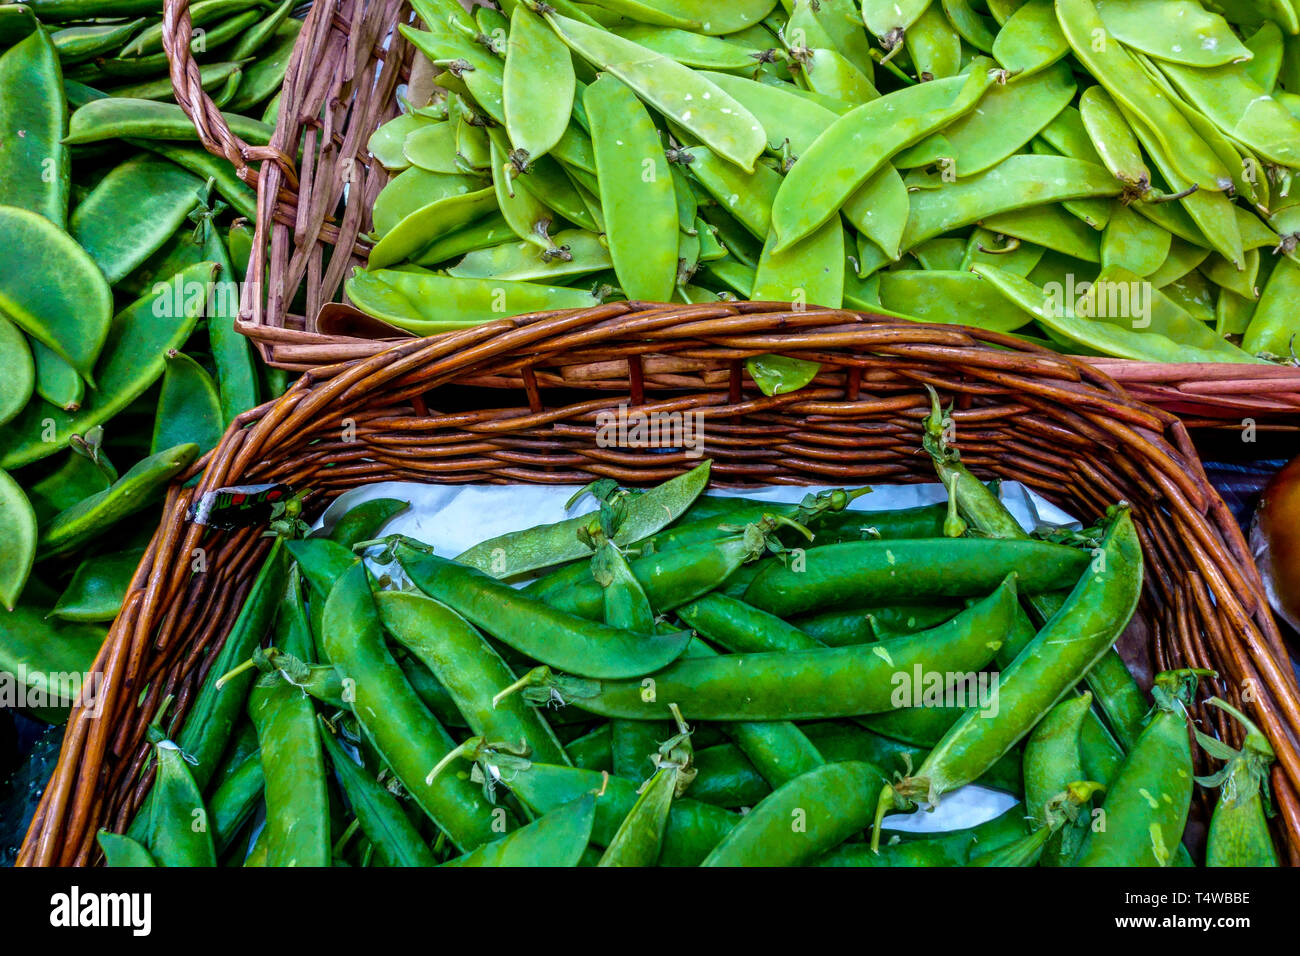 Cialde di piselli freschi in cesto presso il mercato agricolo, piante leguminose Foto Stock